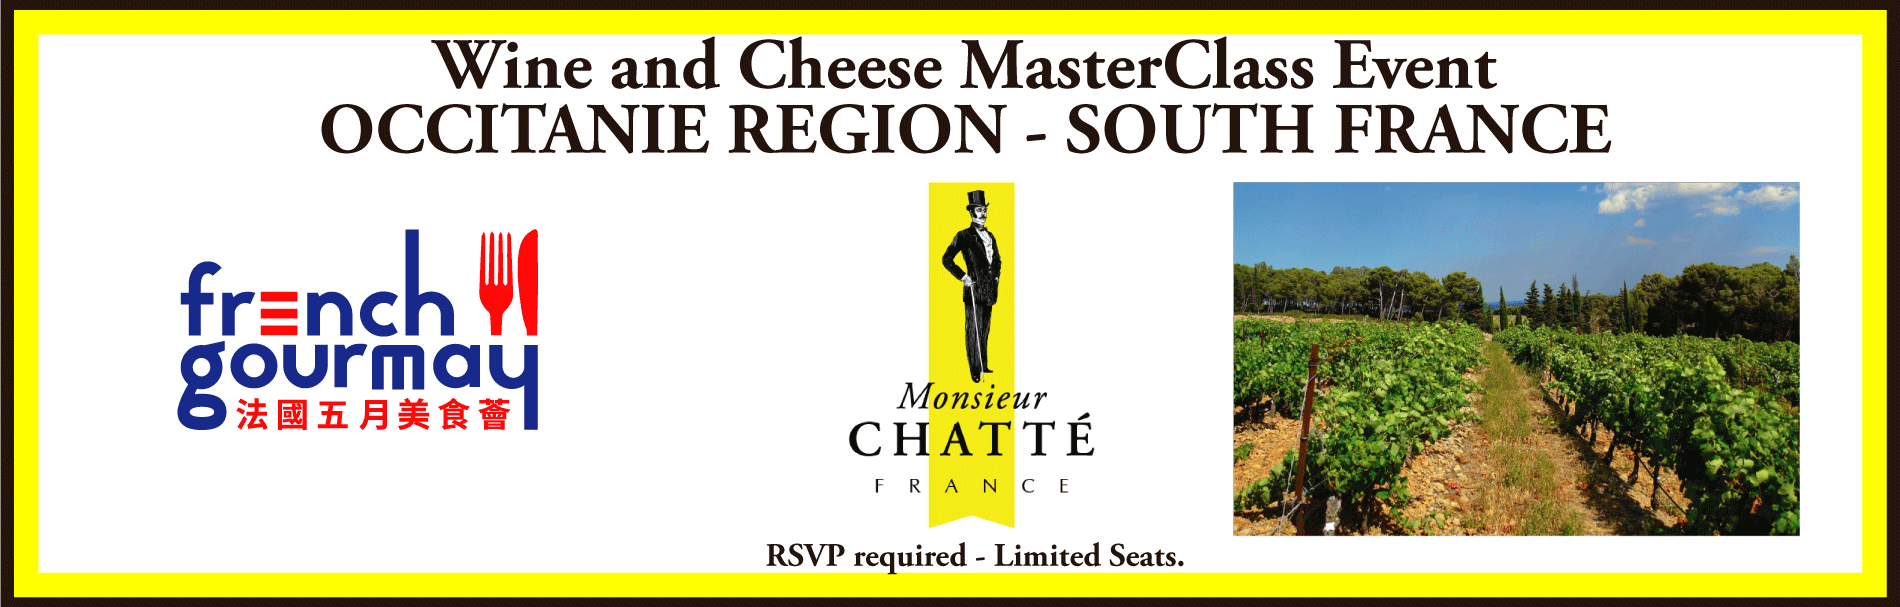 Occitanie MasterClass Wine and Cheese Pairing Event - JUNE 12